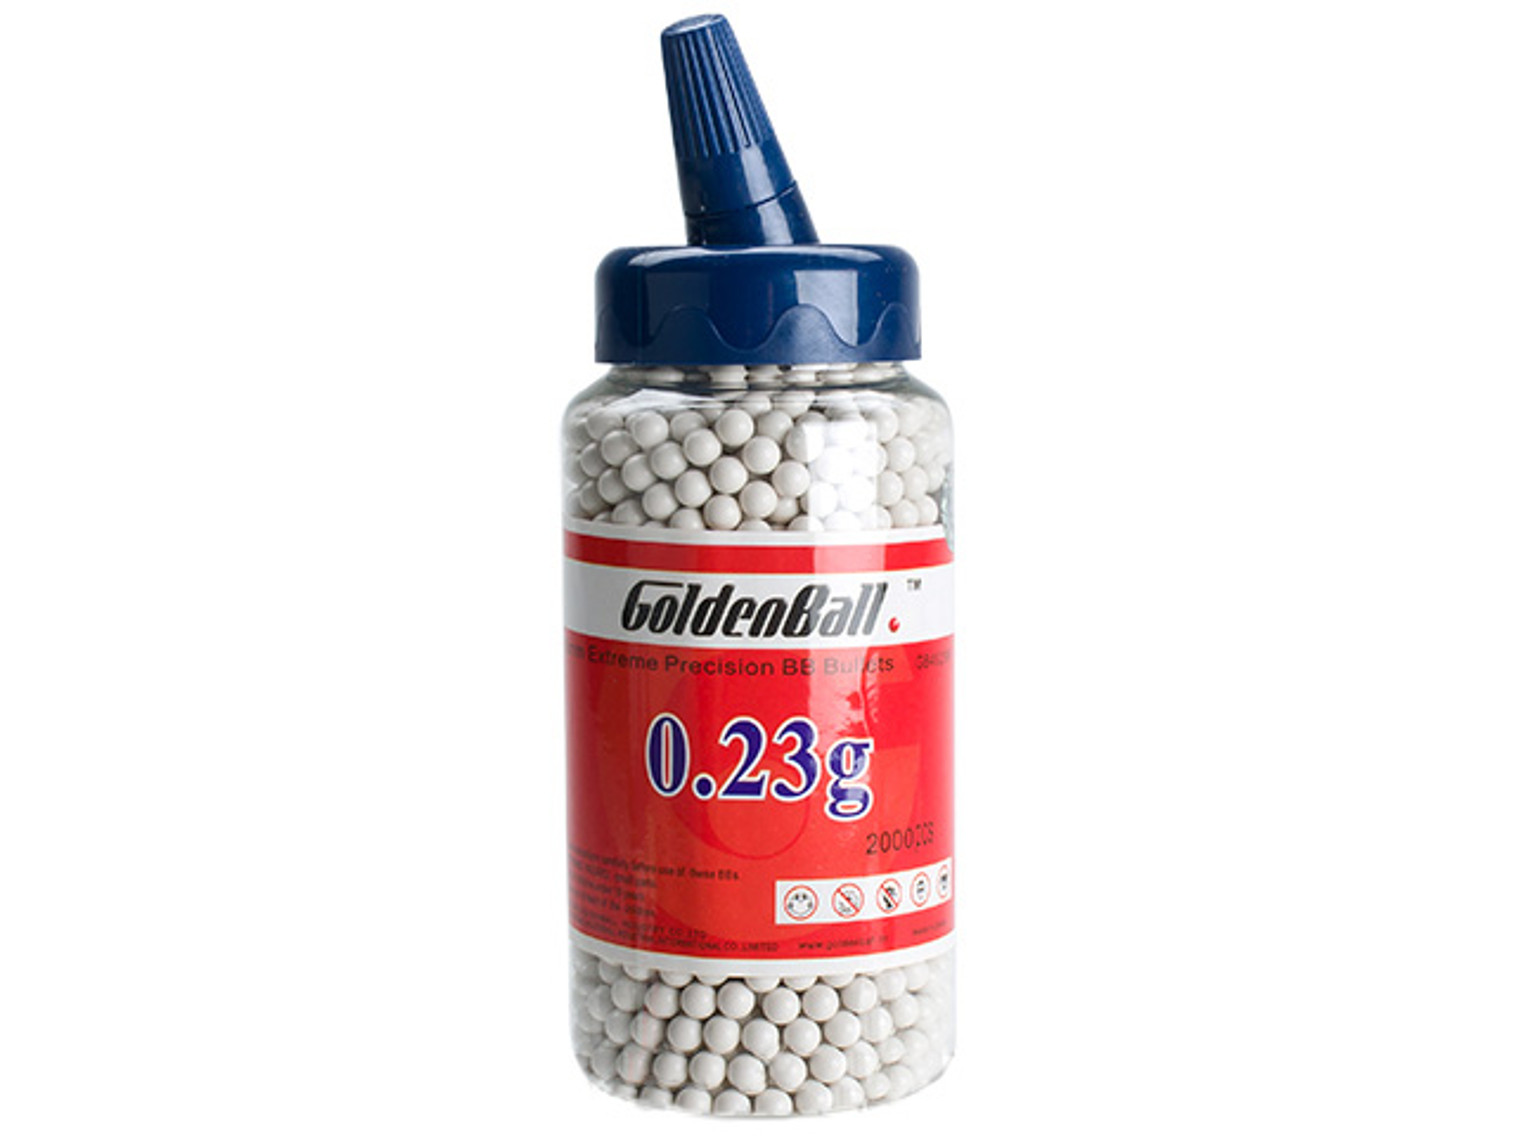 Golden Ball Pro-Series 6mm Premium High Grade High Strength Airsoft BBs - 0.23g White (2000rd Bottle)